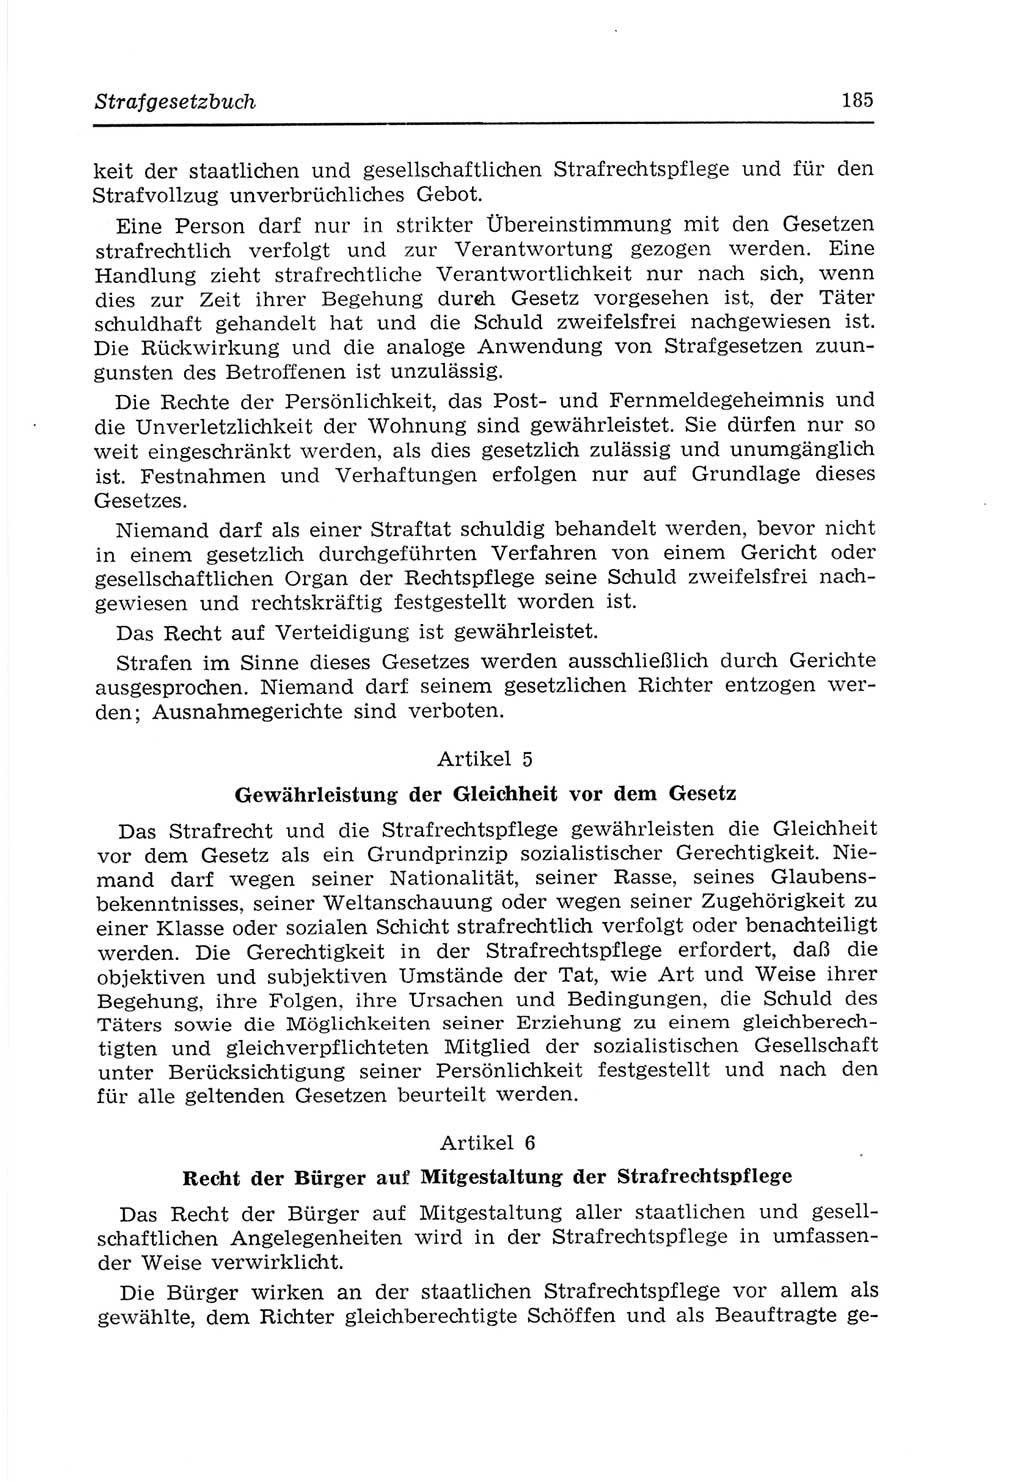 Strafvollzugs- und Wiedereingliederungsgesetz (SVWG) der Deutschen Demokratischen Republik (DDR) 1968, Seite 185 (SVWG DDR 1968, S. 185)